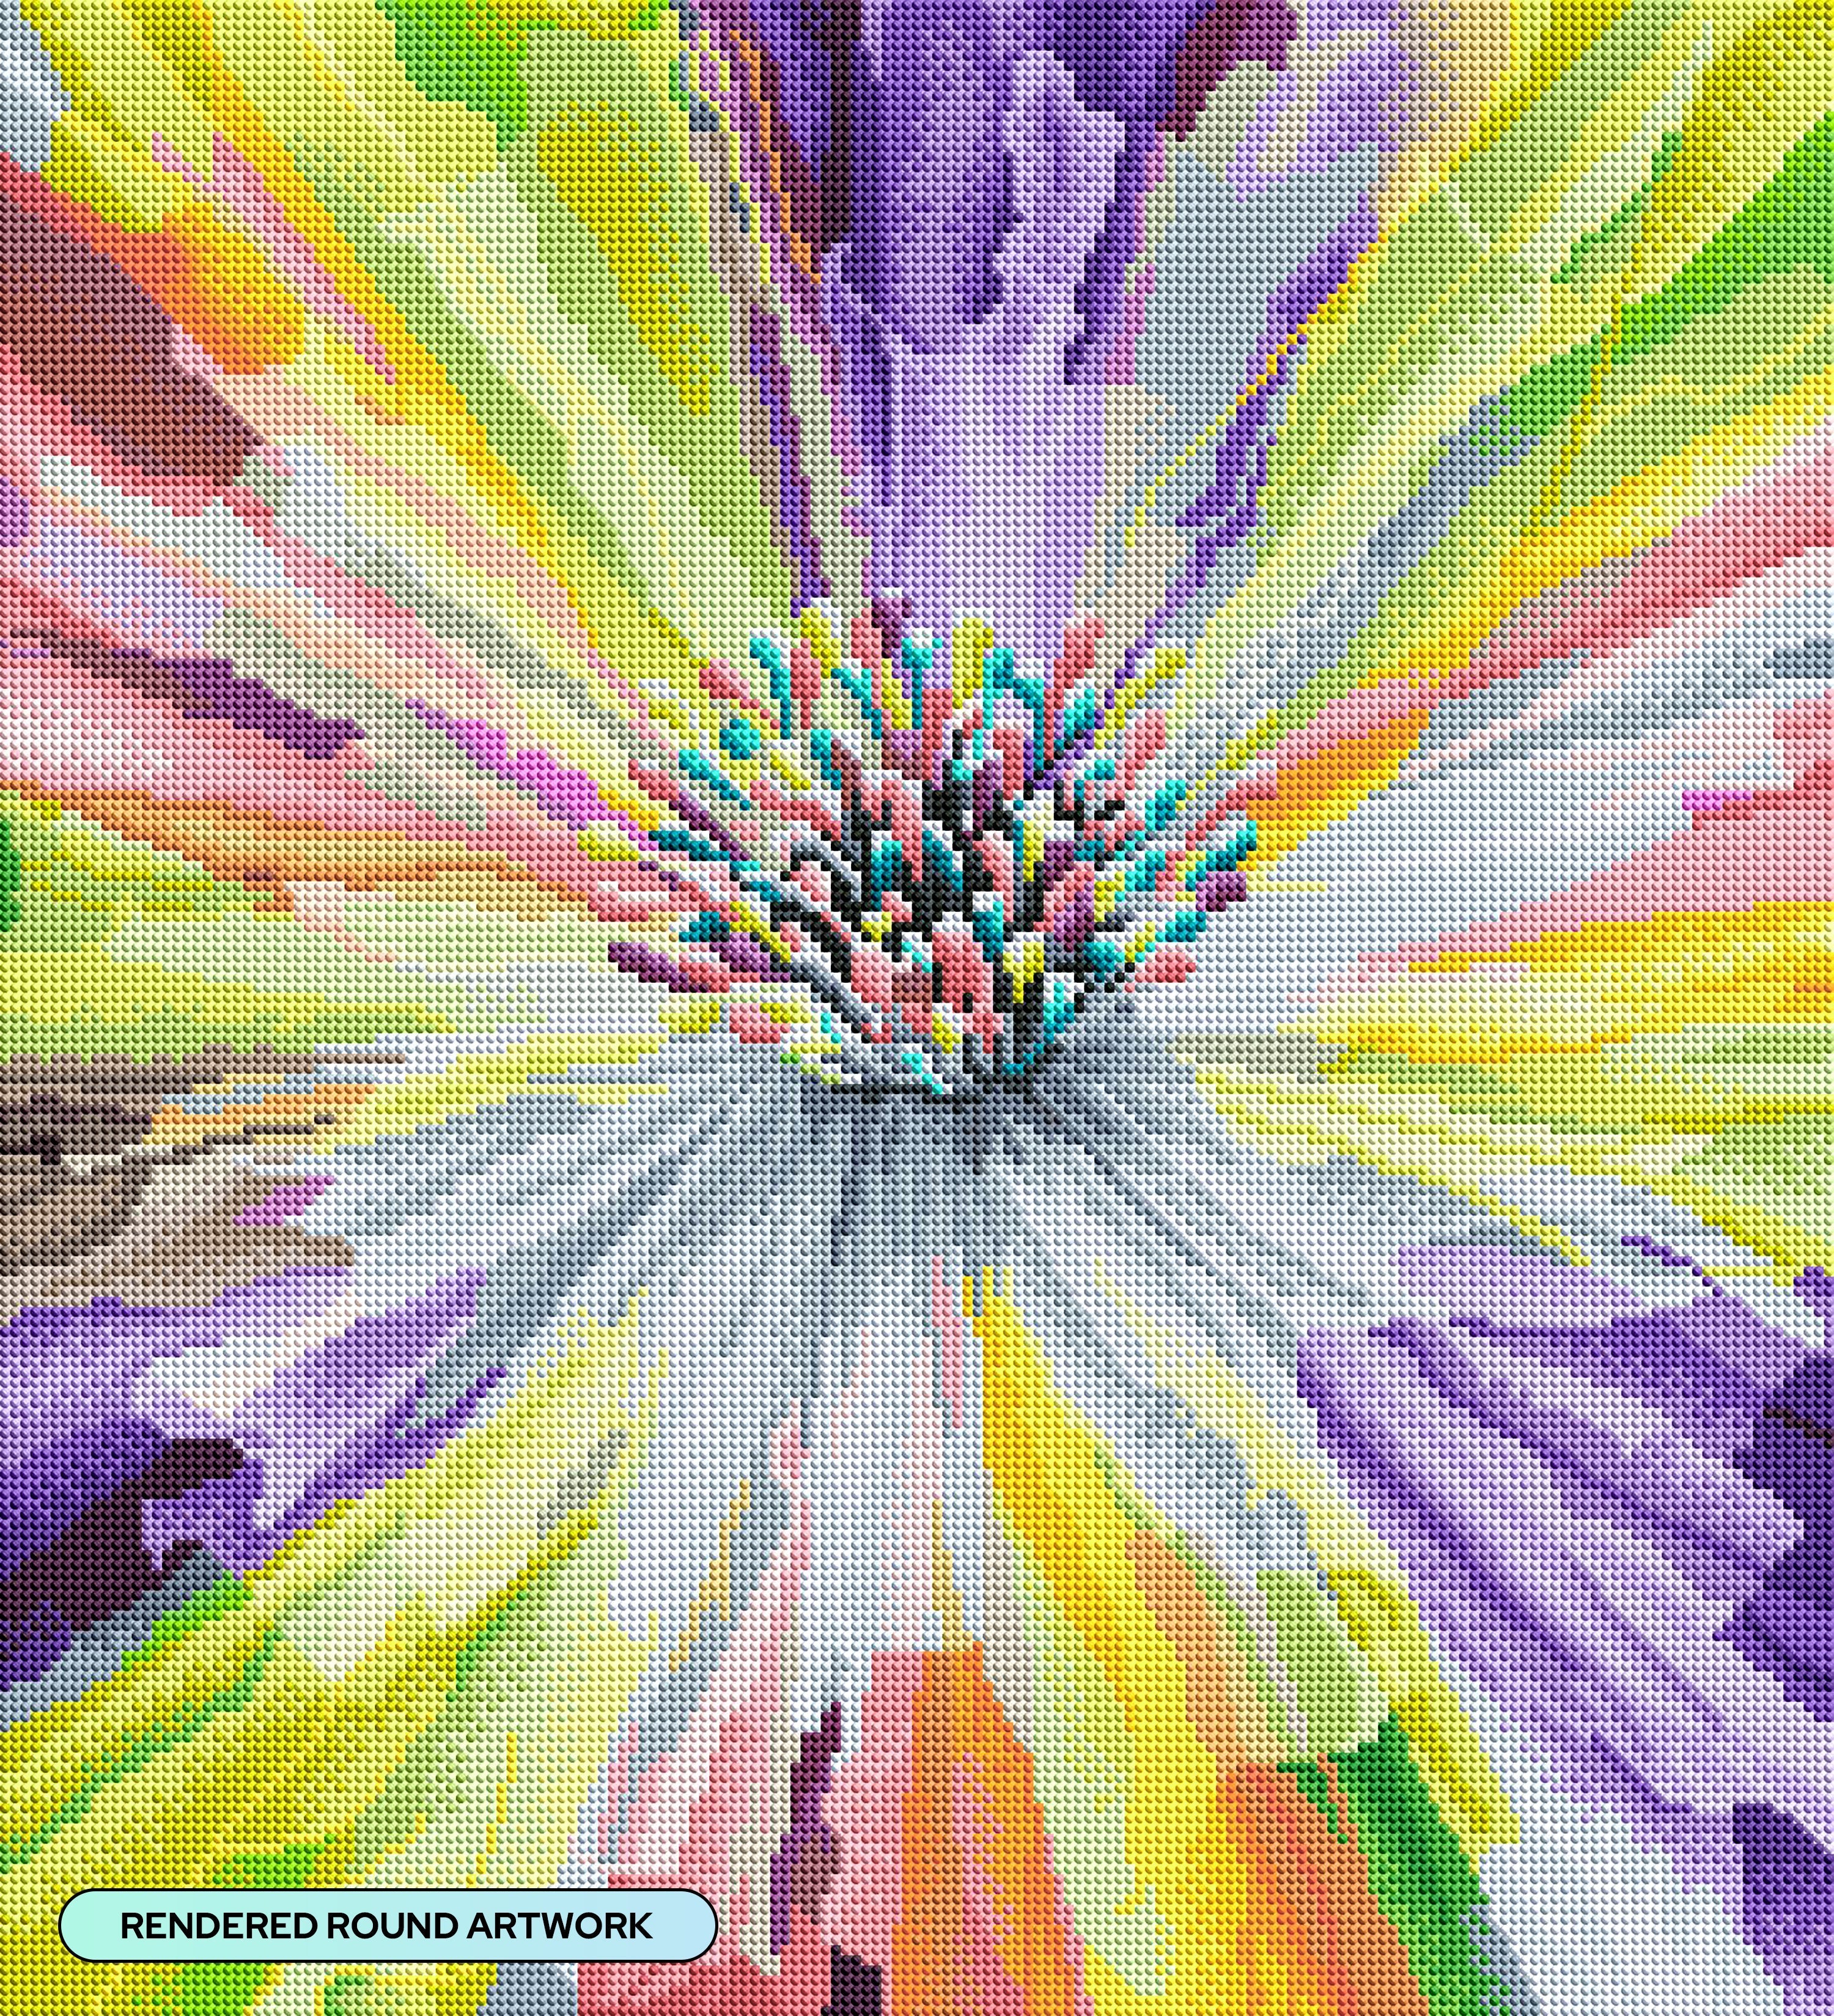 Diamond Dotz® Love Rainbow Diamond Painting Kit